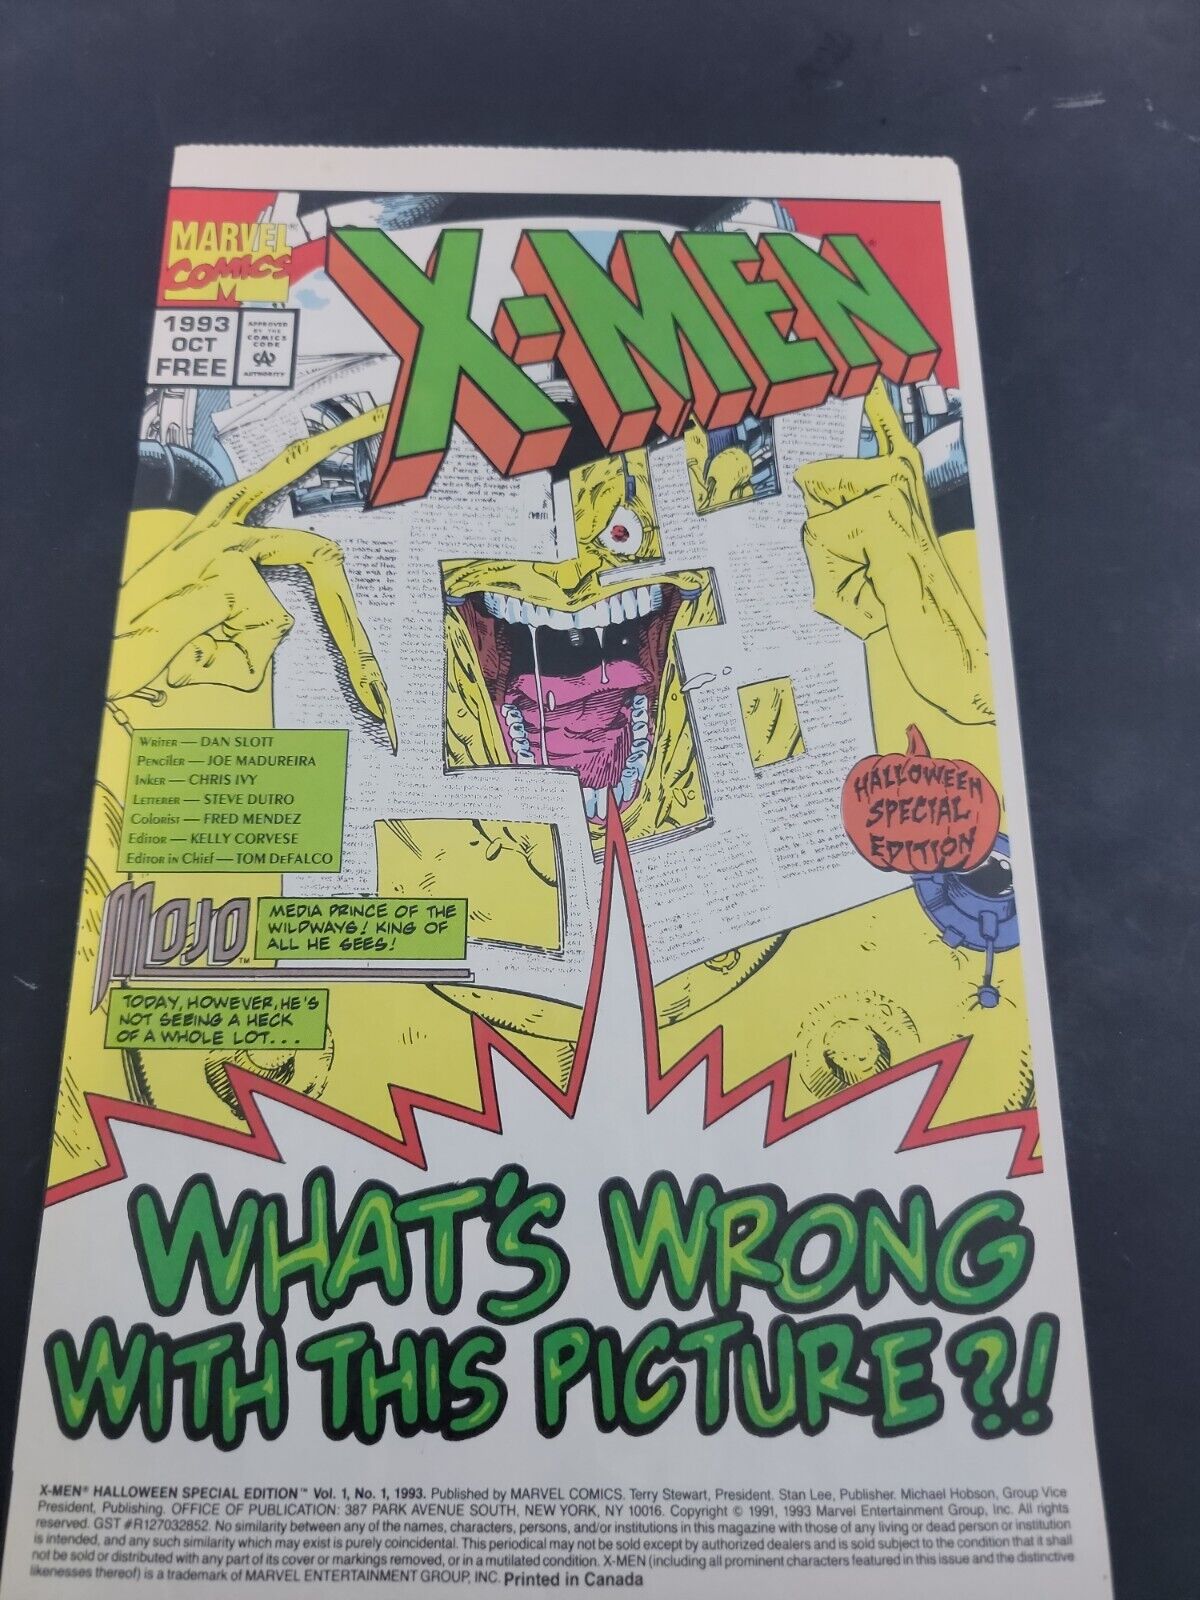  X-MEN HALLOWEEN SPECIAL EDITION #1 1993 PROMO Vintage